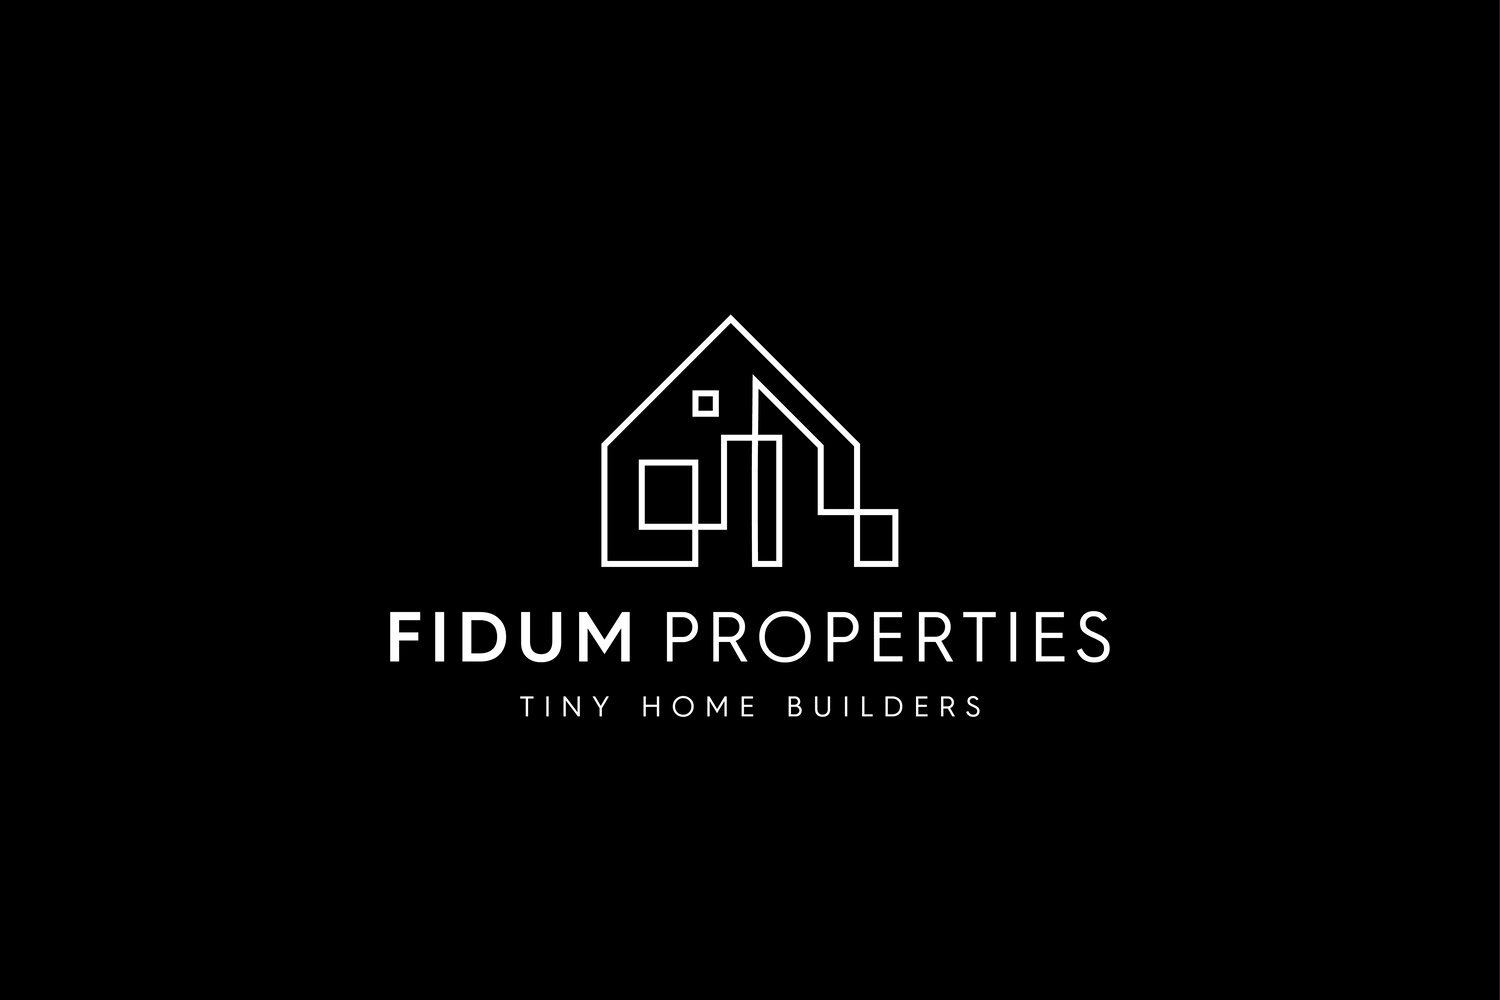 Fidum Properties